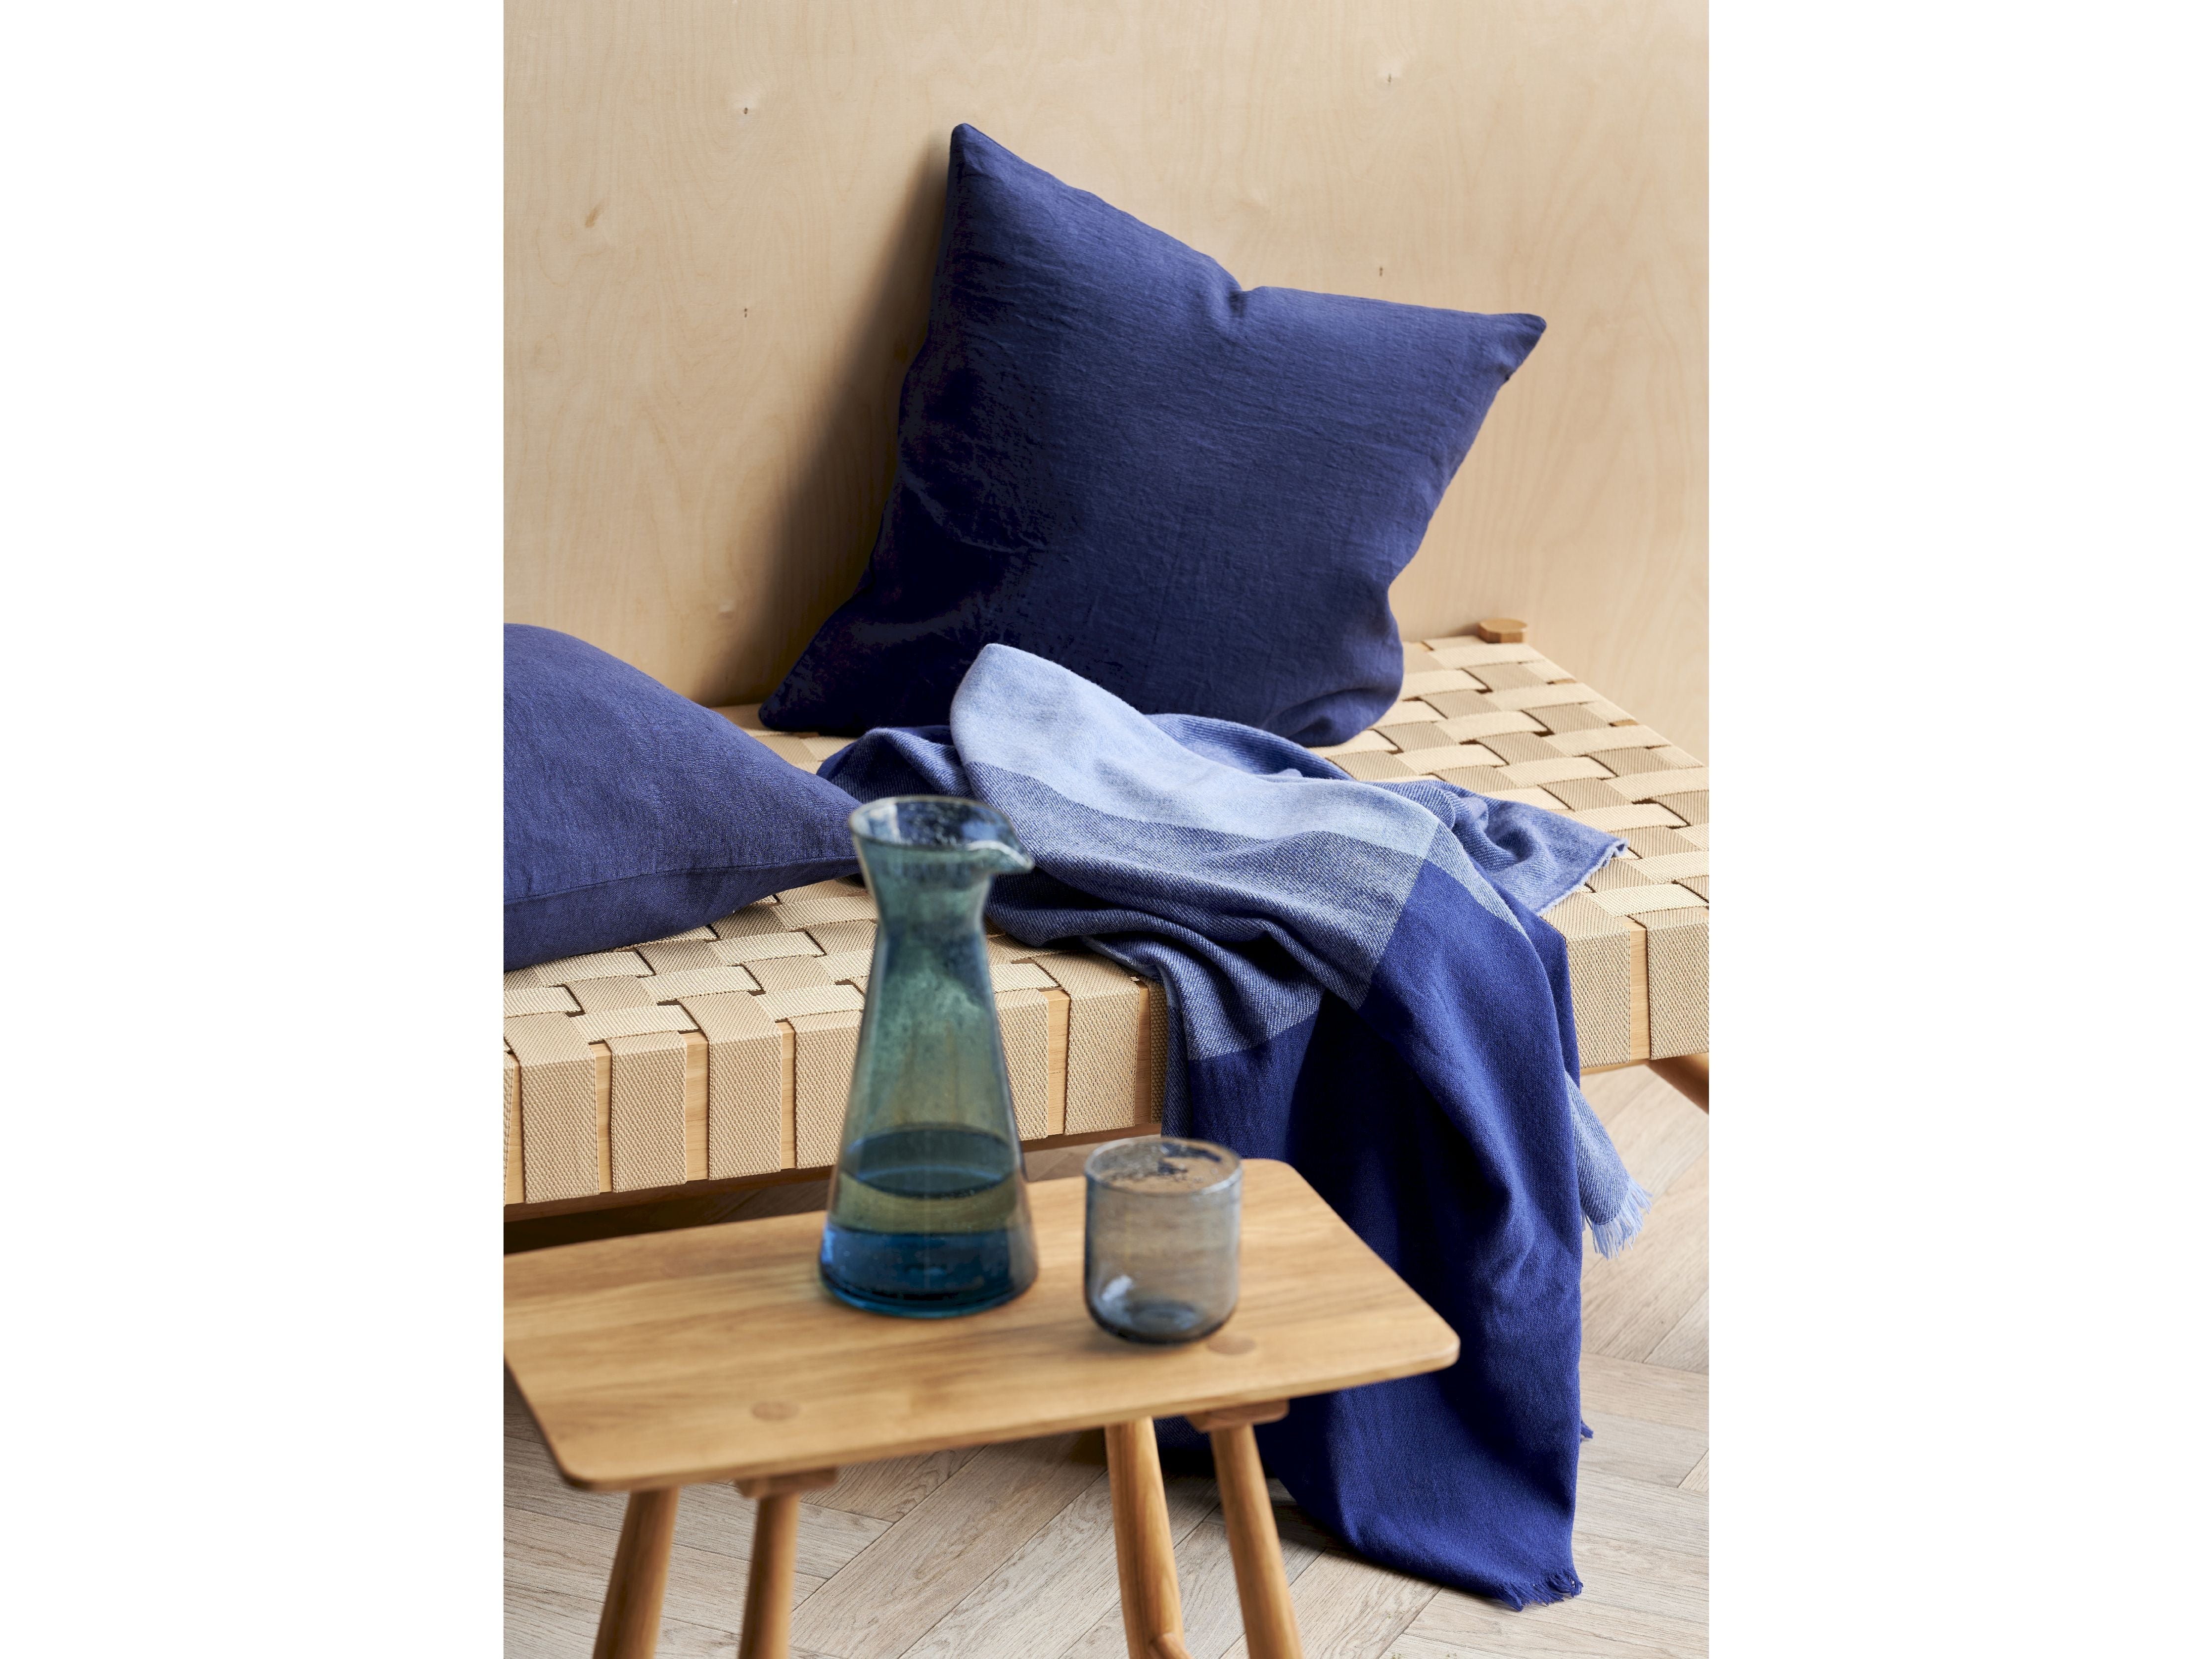 Södahl Linen Cushion 50x50 cm, królewski niebieski